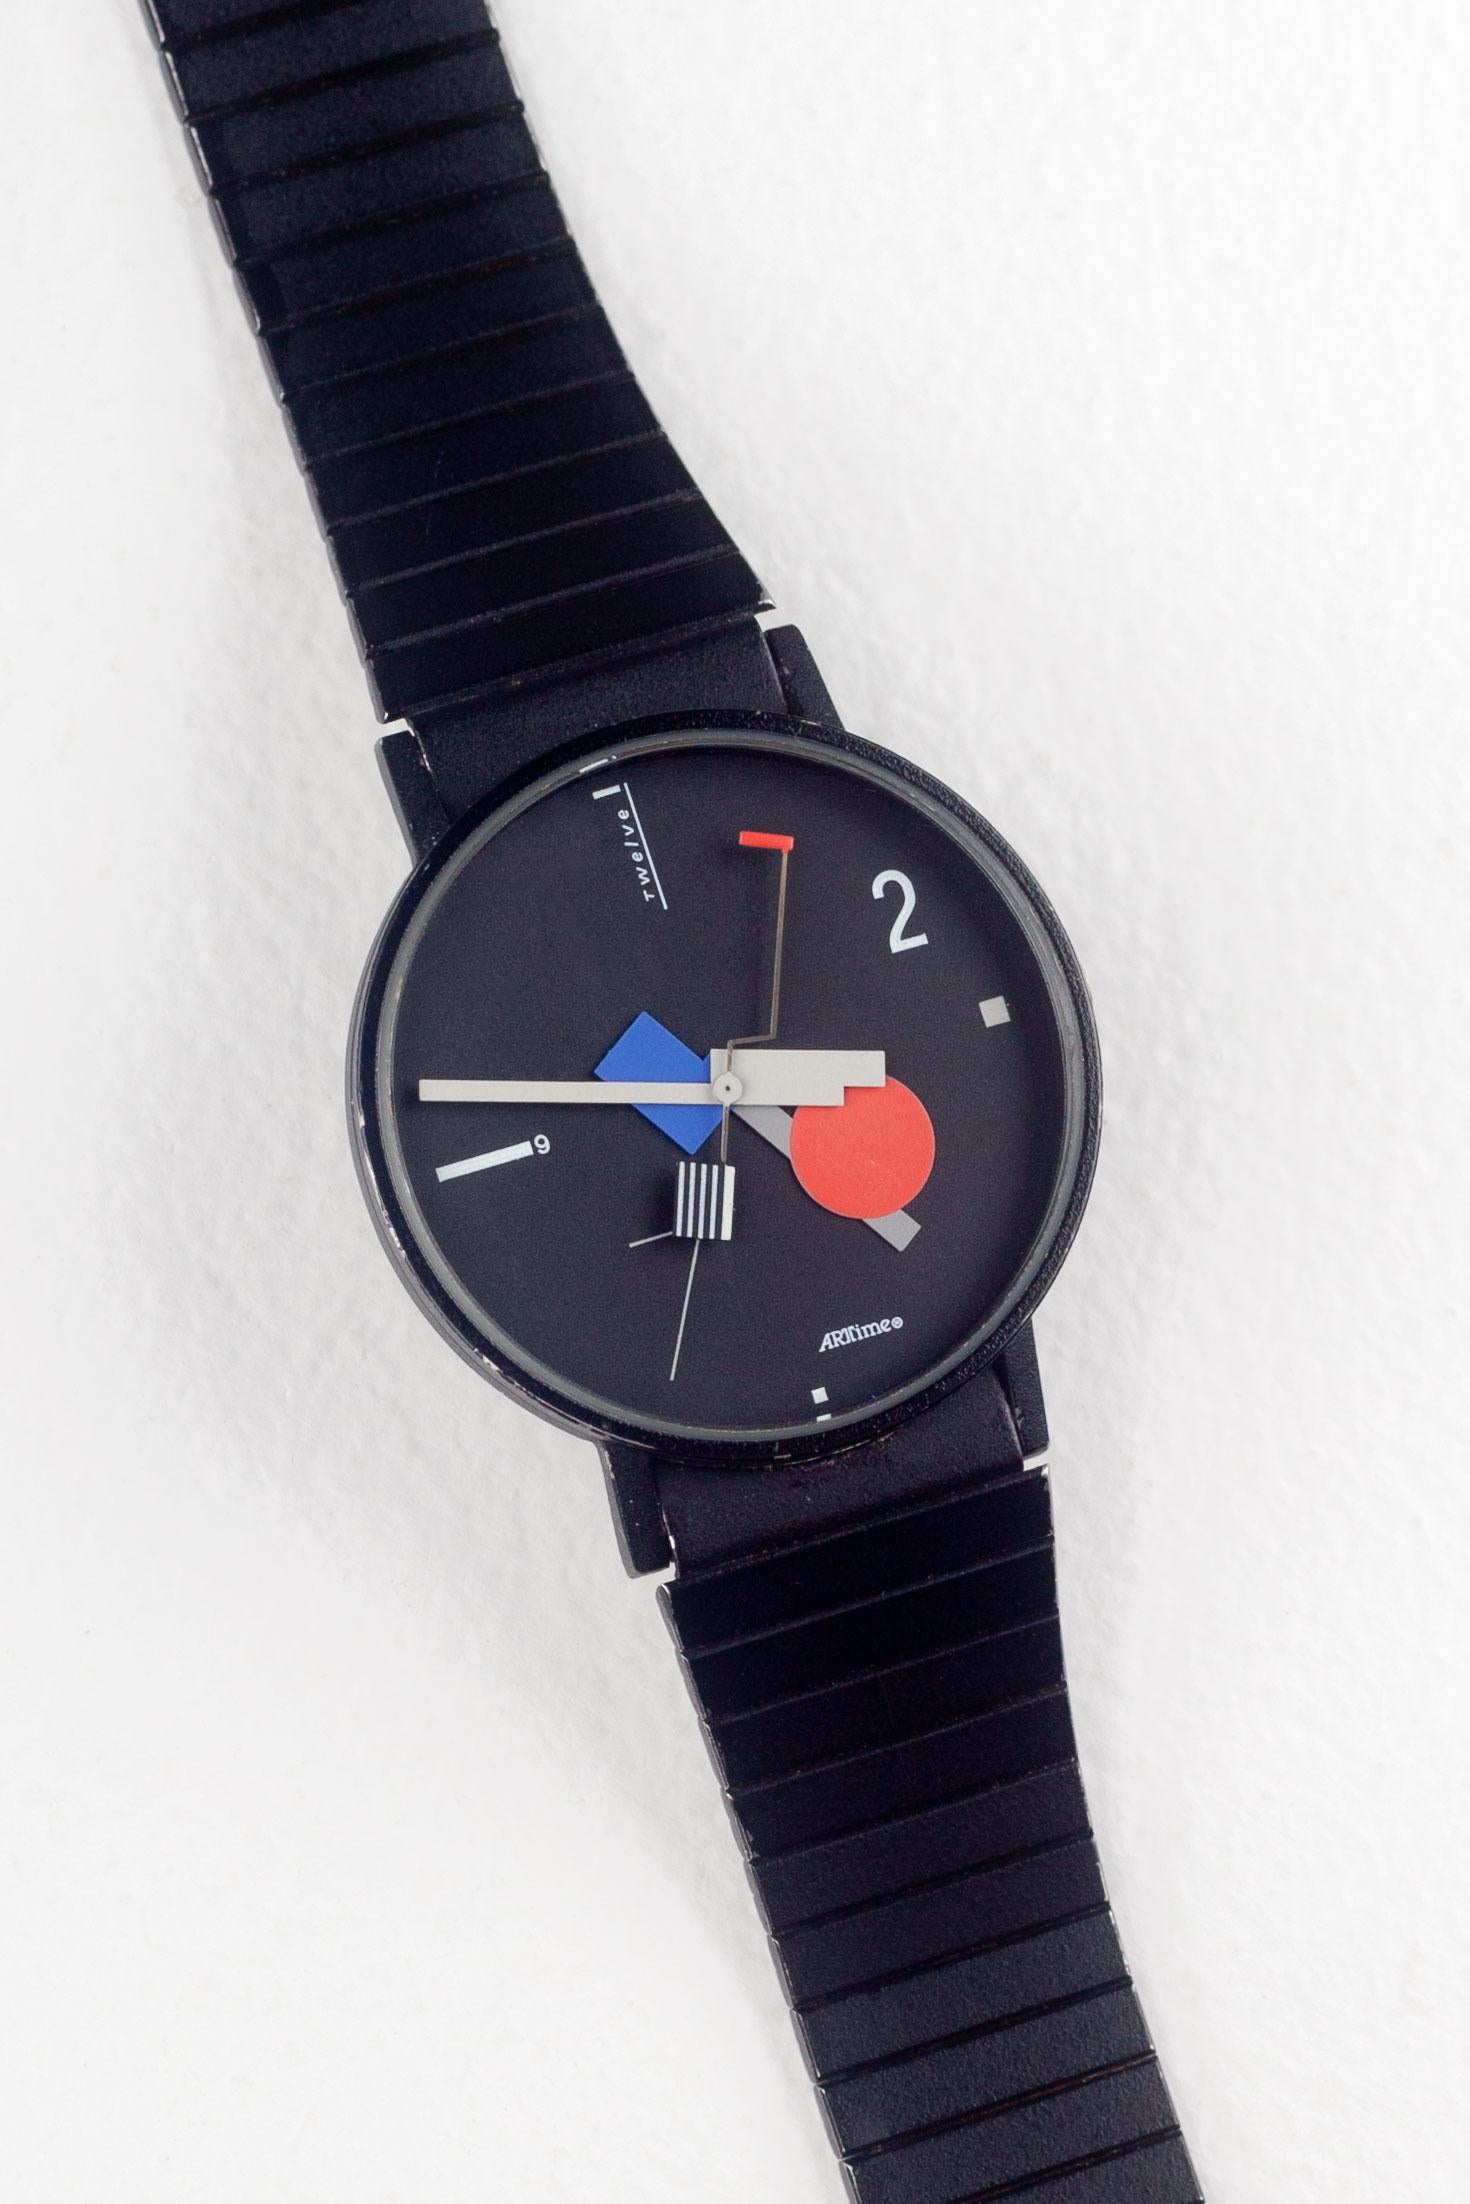 Seltene Armbanduhr der ArTime Collection, entworfen von Nicolai Canetti, mit dem gleichen Design wie die berühmte Wanduhr. Schlank und schick. Mit Anleihen beim Bauhaus und der Memphis-Gruppe ist diese Uhr ein Kondensat der architektonischen